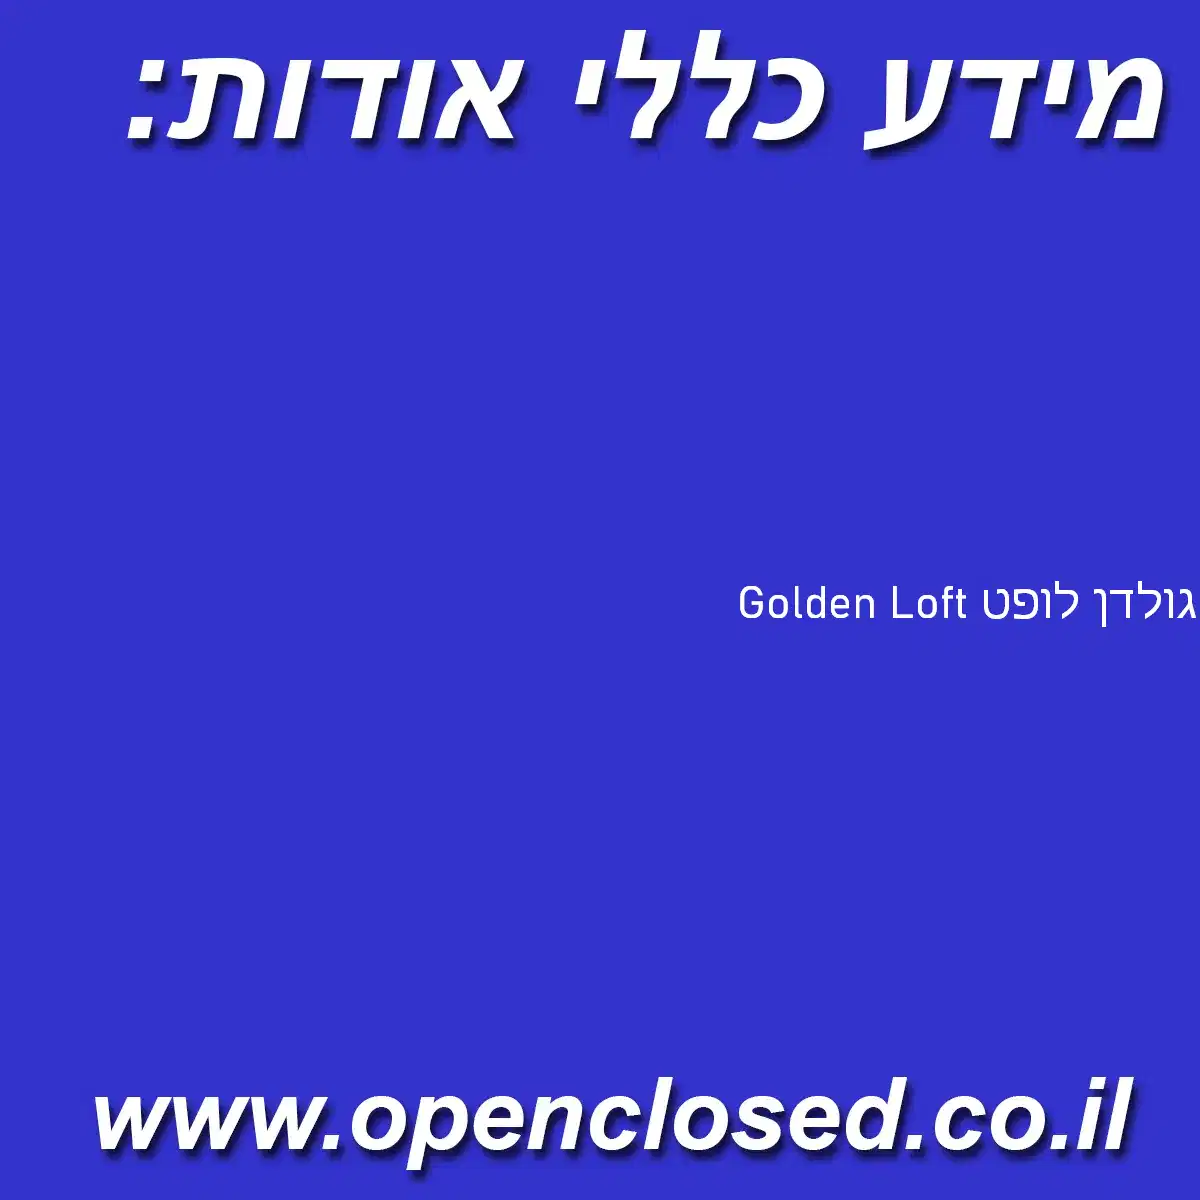 גולדן לופט Golden Loft